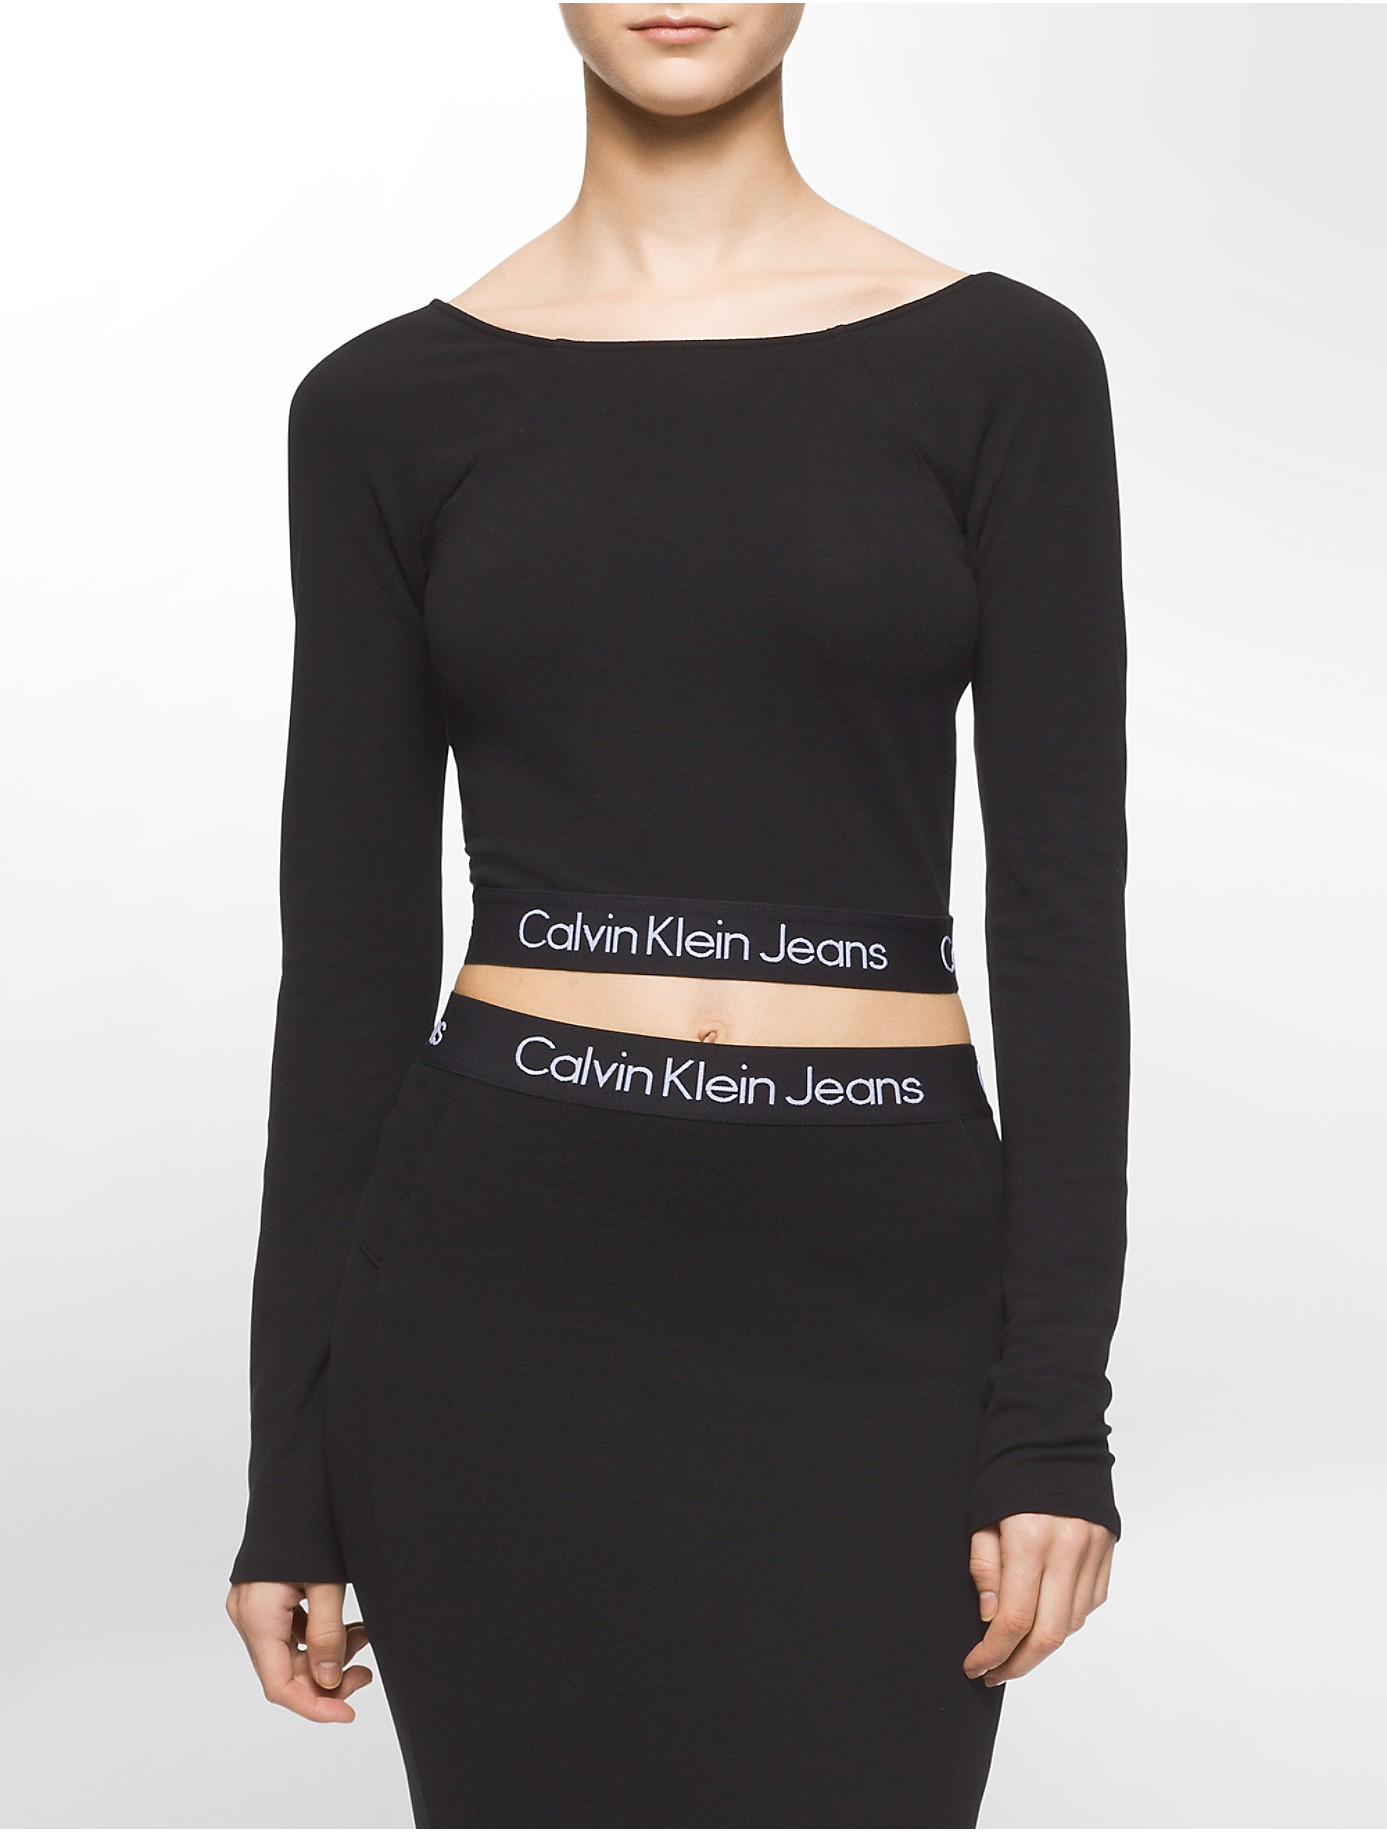 Calvin Klein Denim Jeans Solid Long Sleeve Crop Top in Black - Lyst